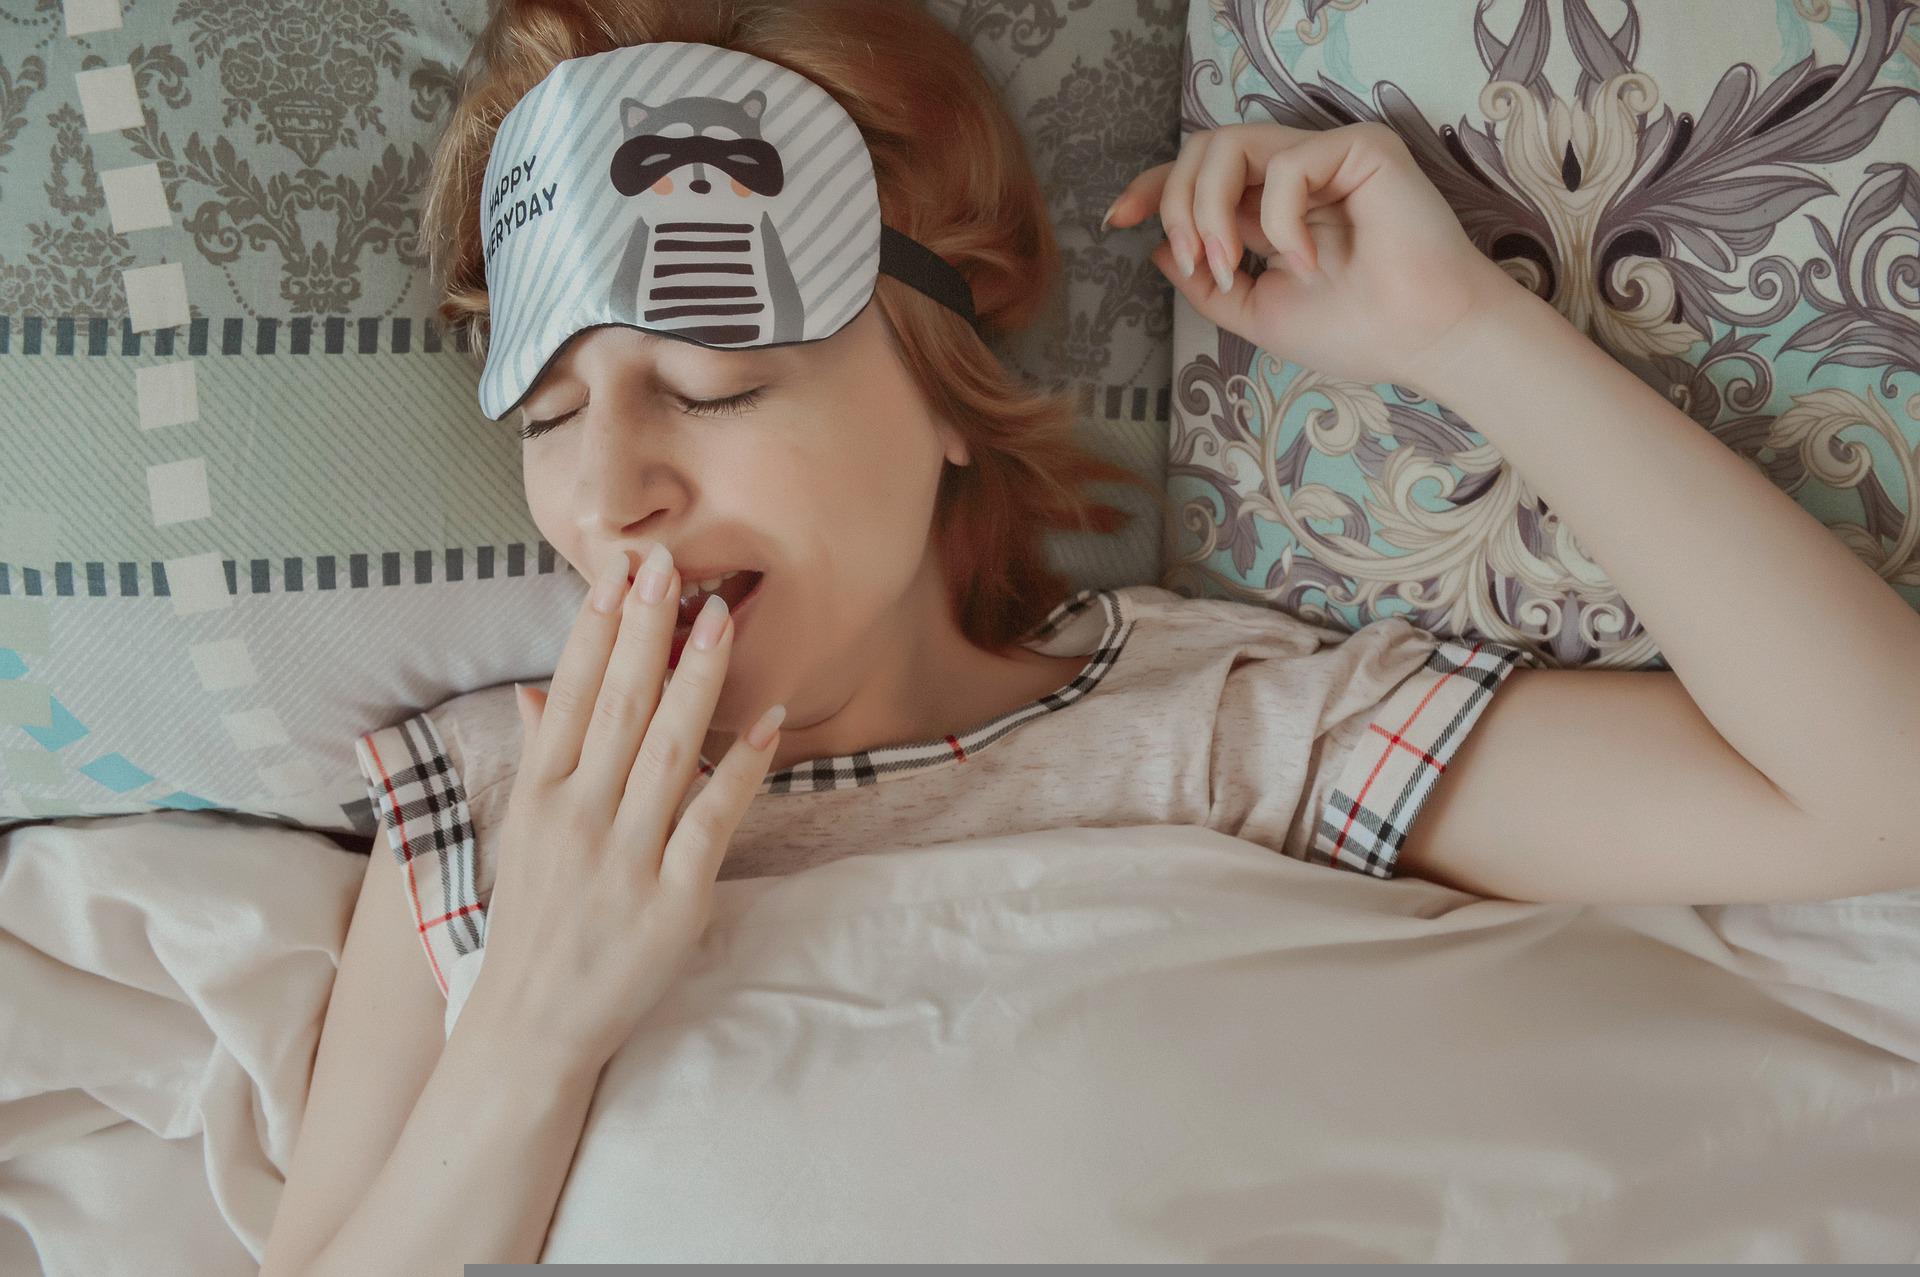 Simak 5 Tips Atasi Insomnia, Buruan Dicoba